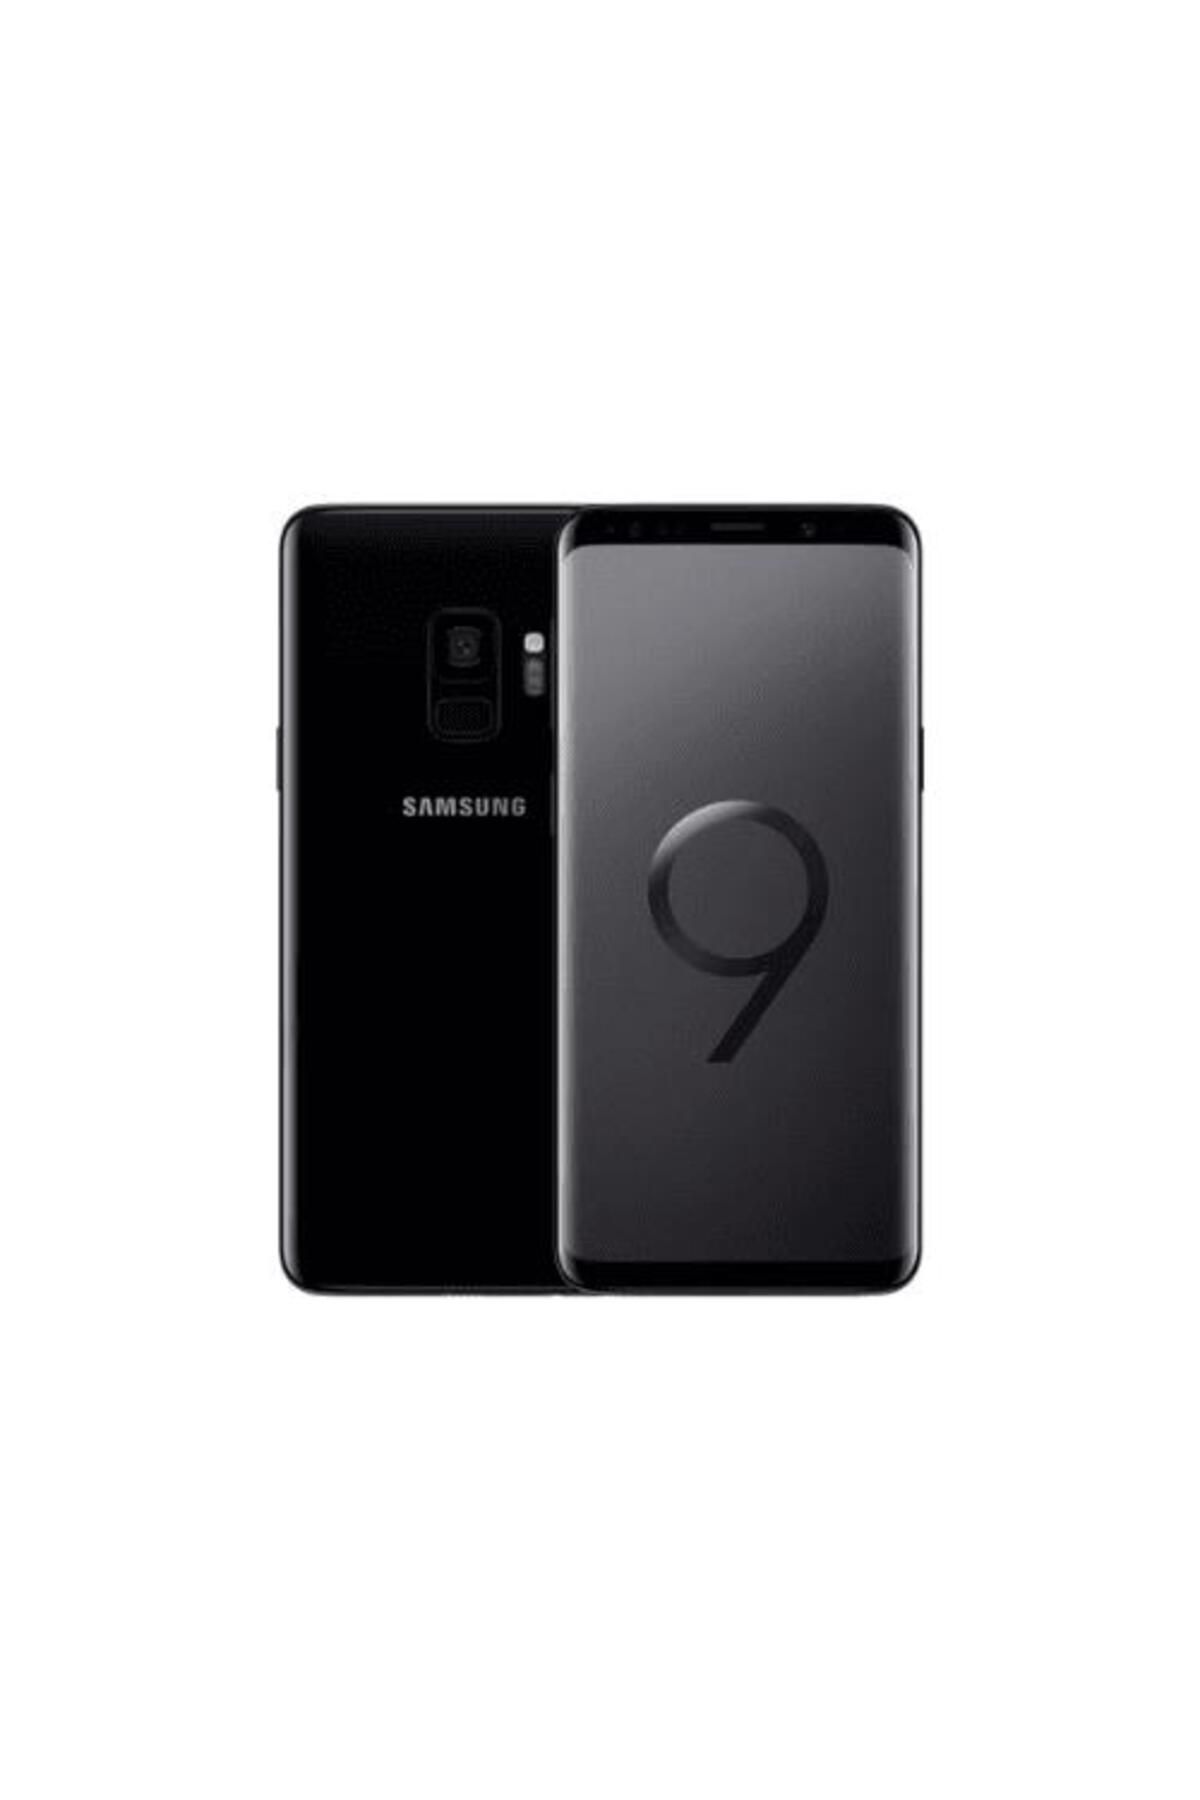 Samsung Yenilenmiş Galaxy S9 64gb -a Kalite- Siyah